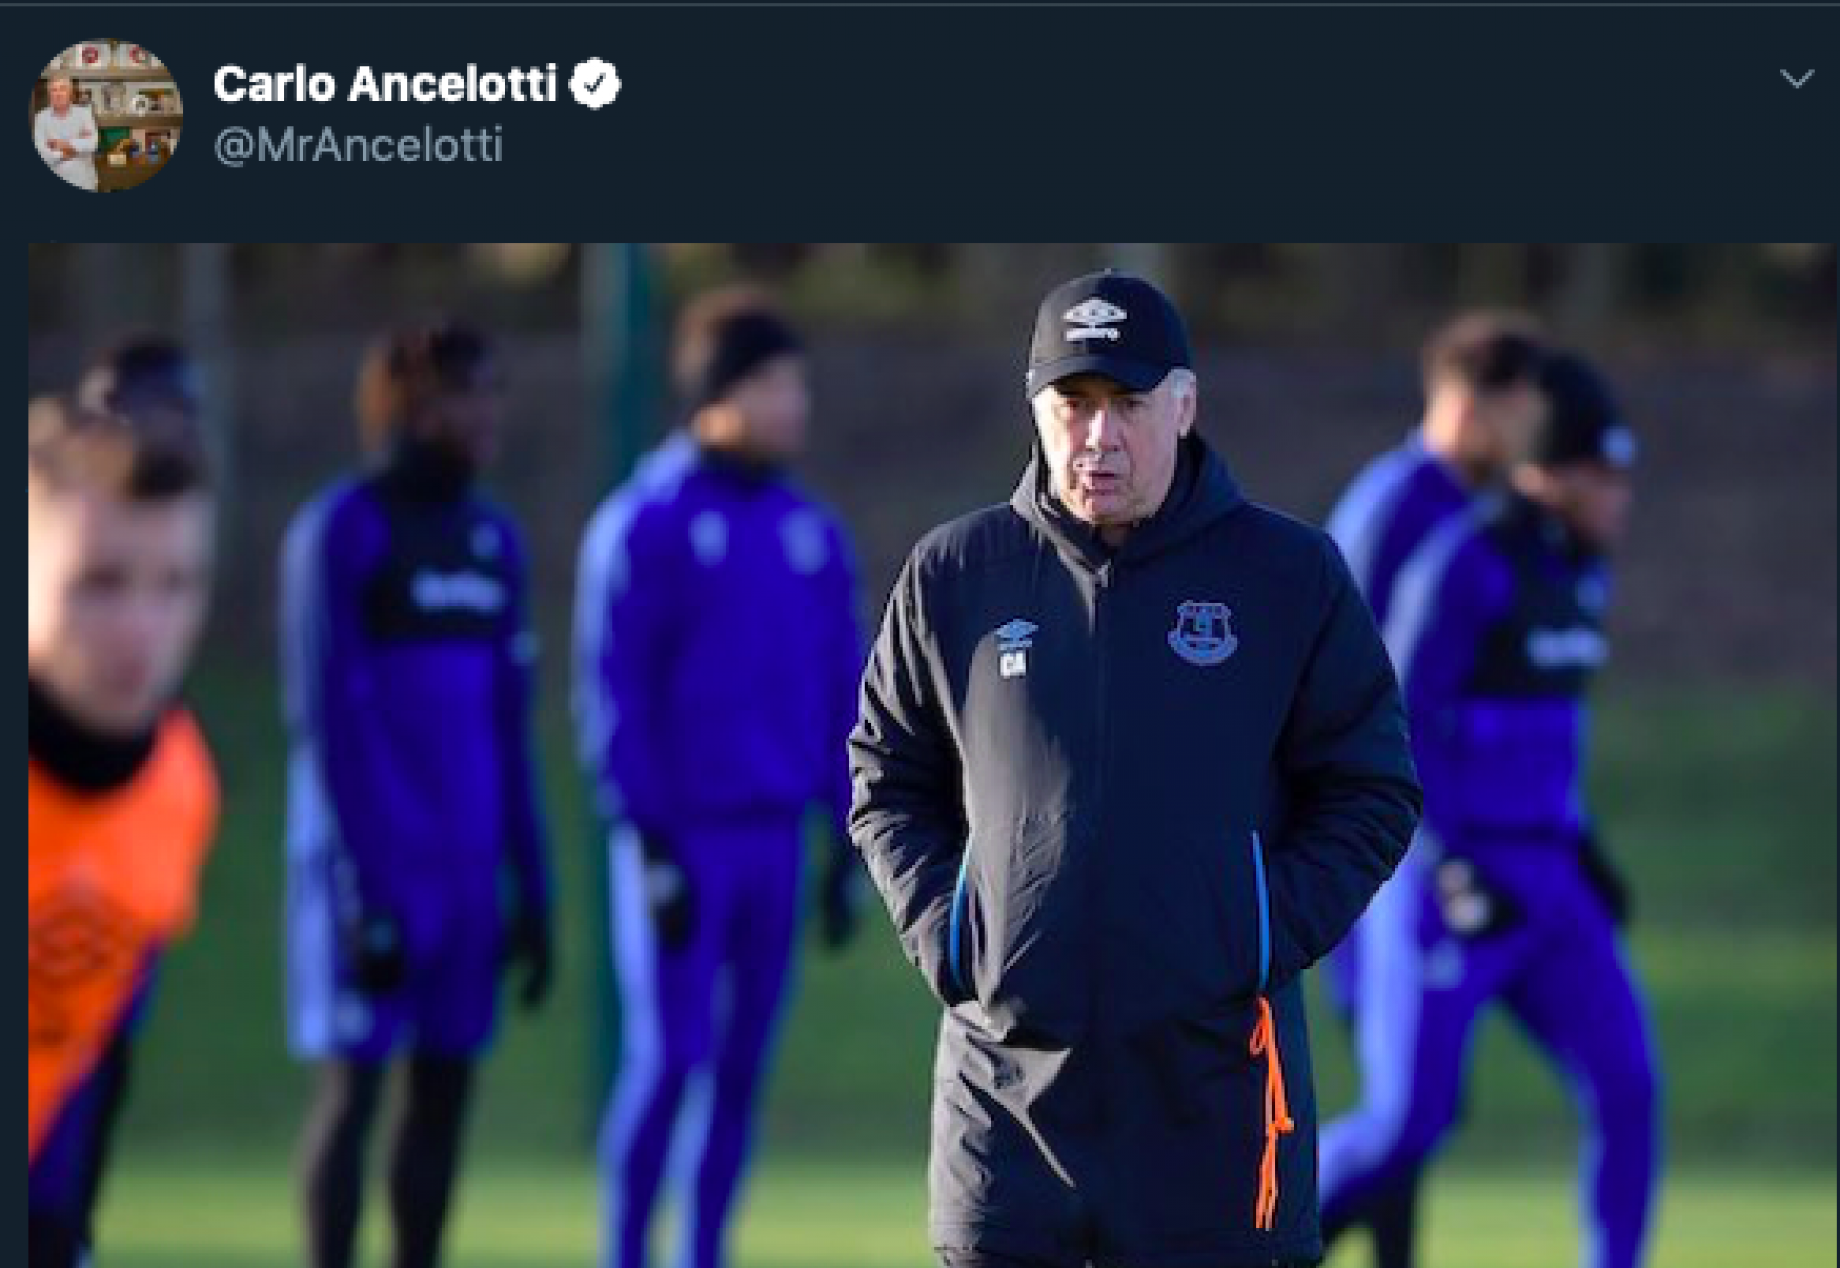 Ancelotti_Everton_Screen_Twitter.png